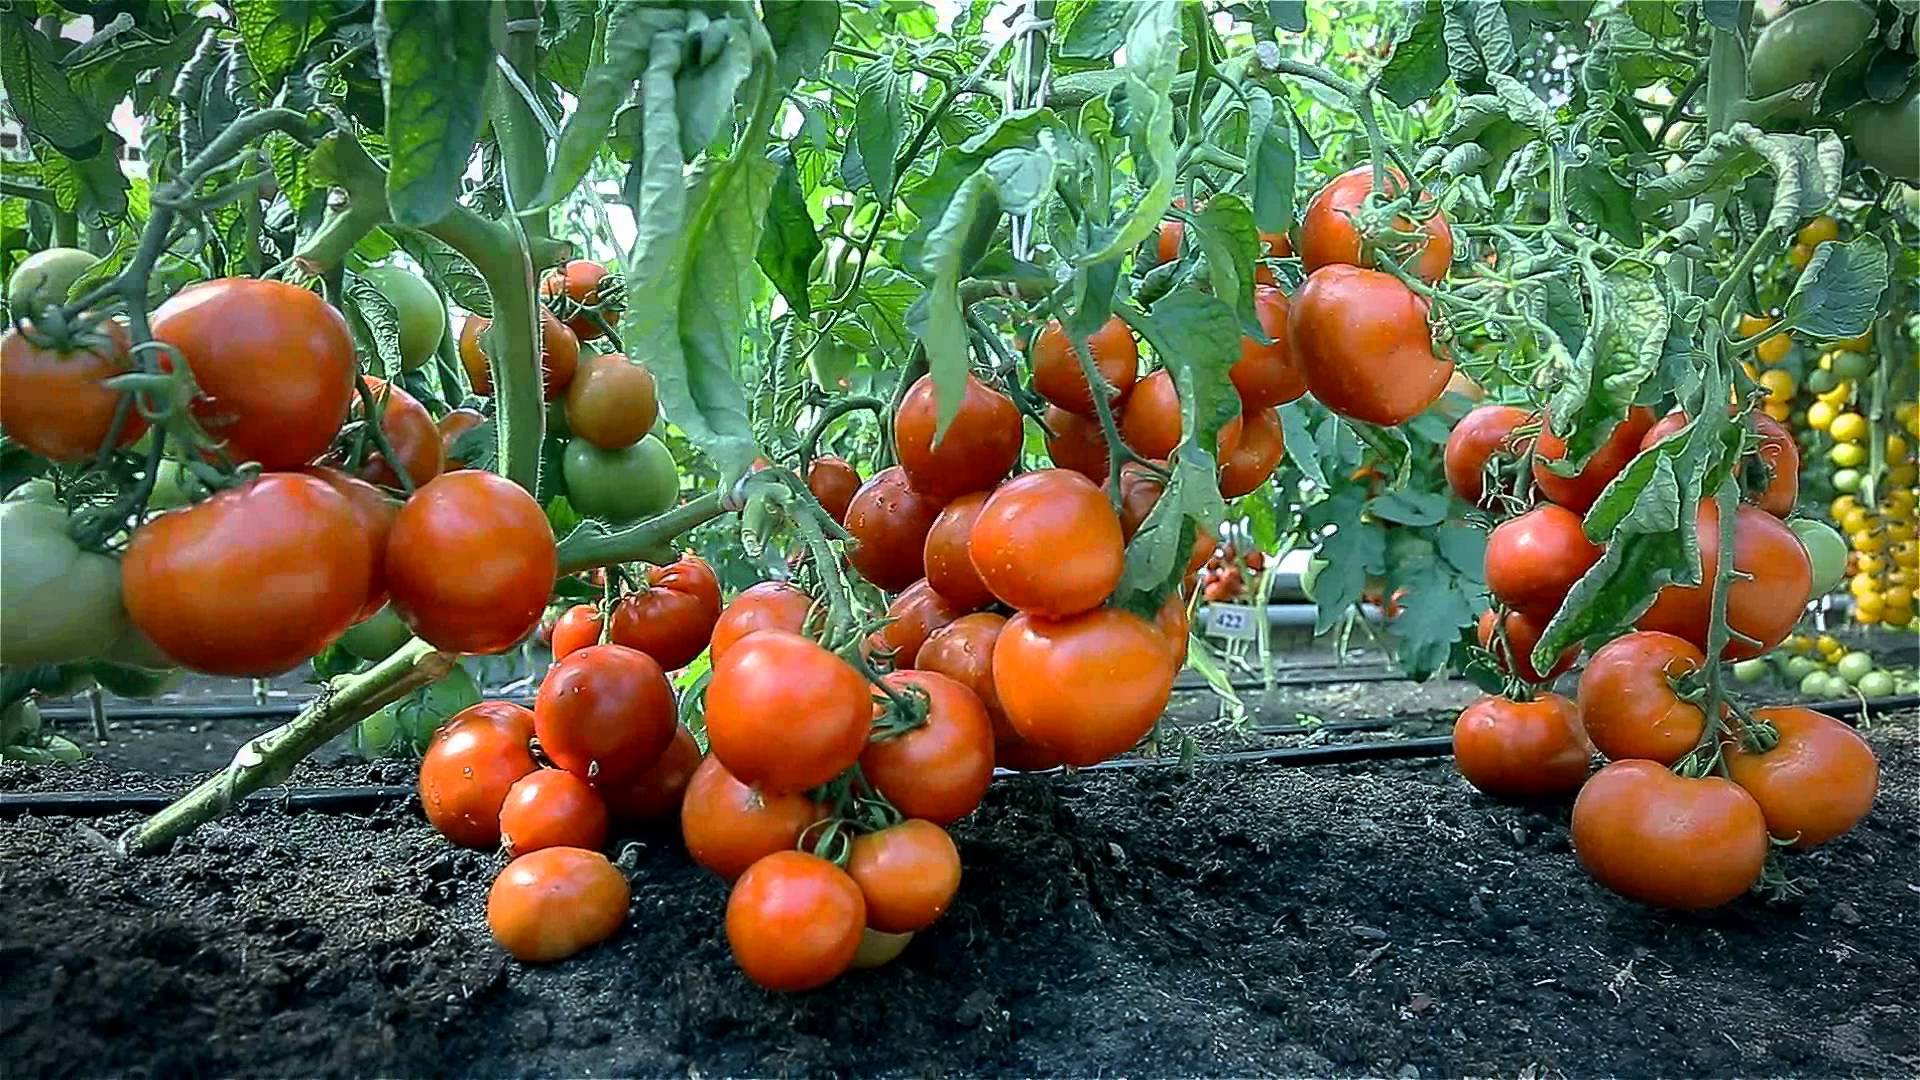 Огурцы и помидоры в одной теплице - огурцы и помидоры, и перцы досадить: можно ли сажать вместе, какая совместимость? русский фермер